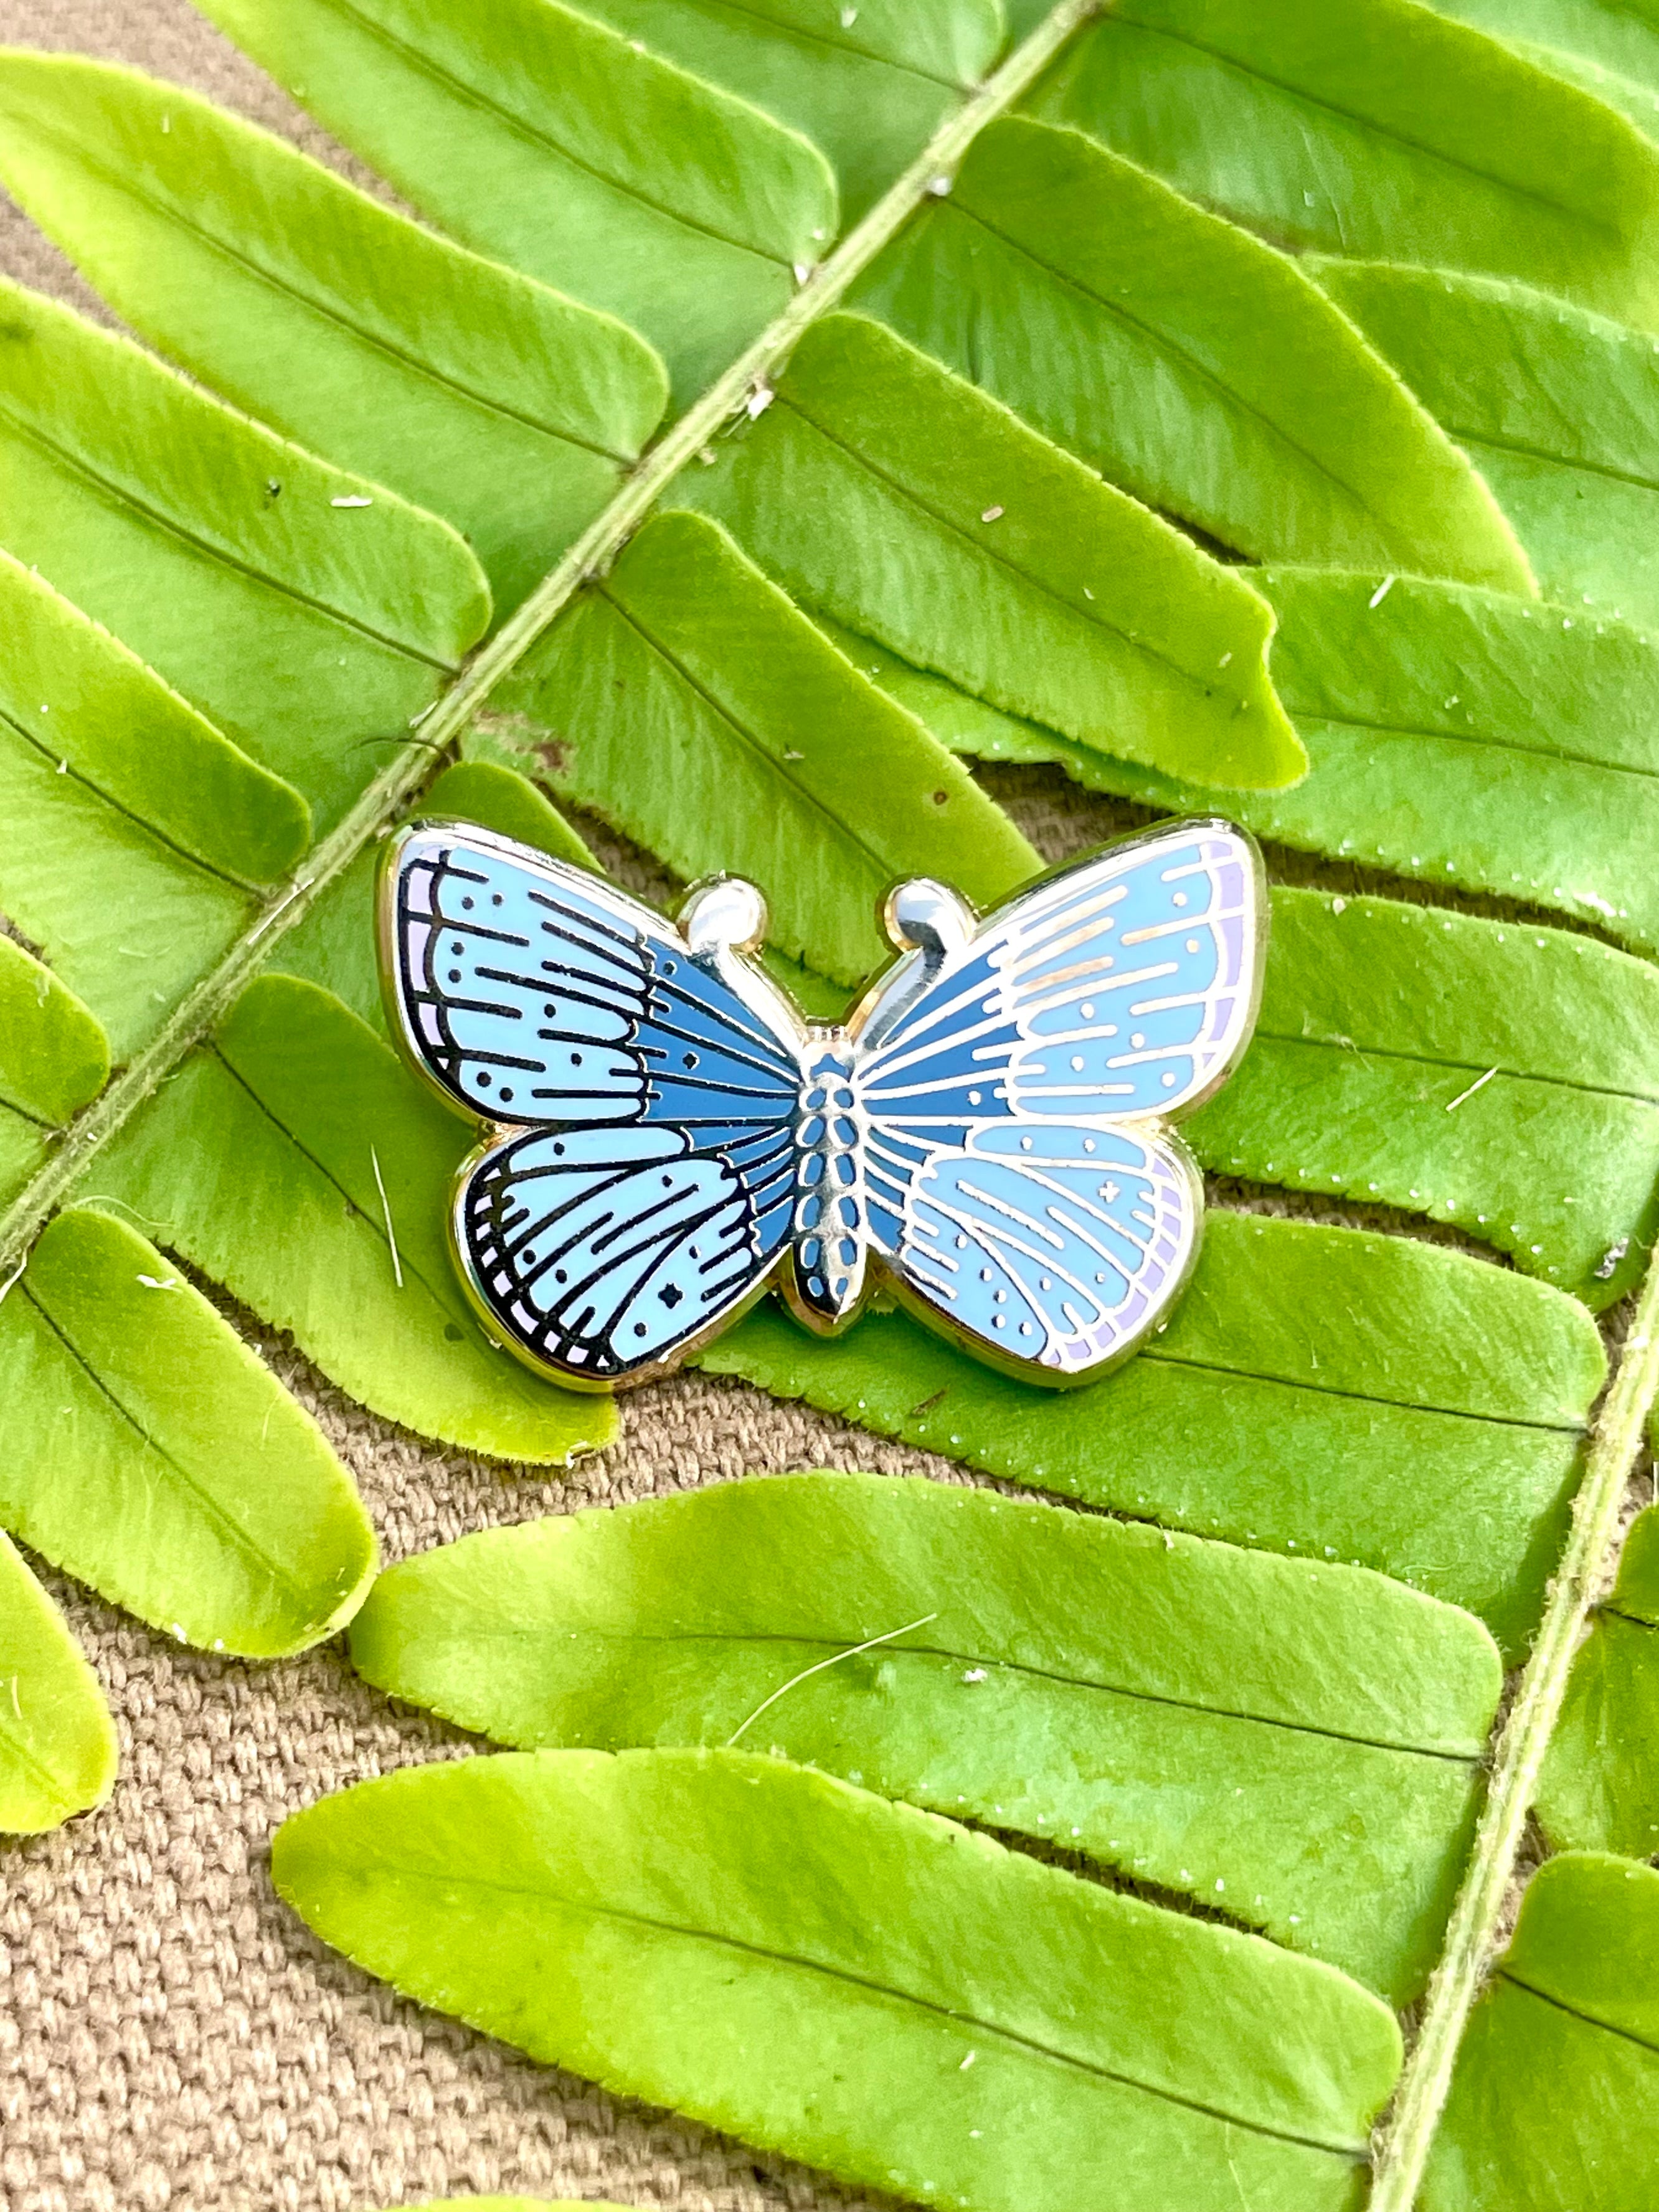 Koa Butterfly Pin